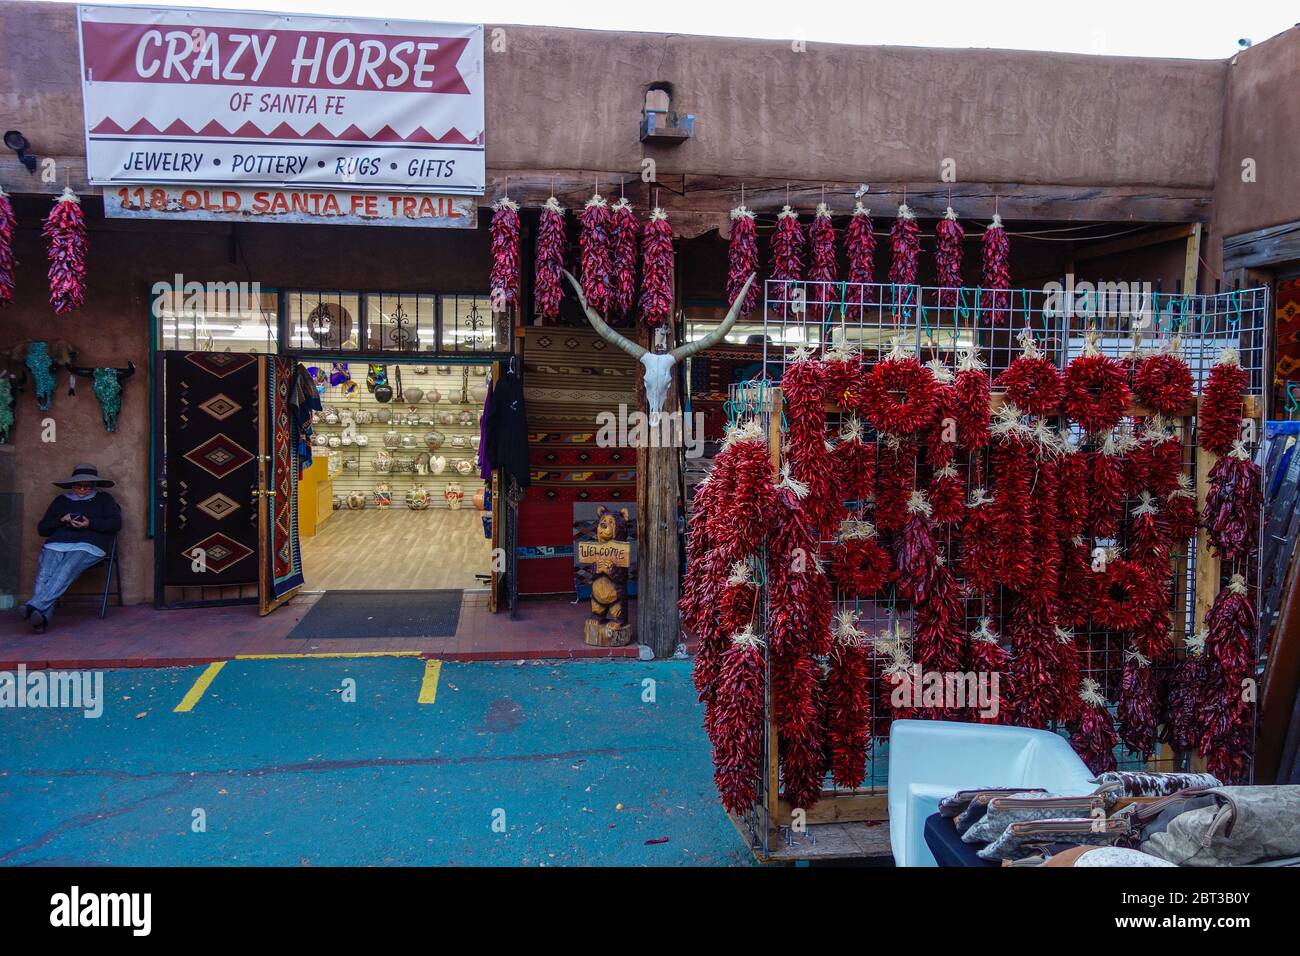 Rote Paprika hängen am Eingang zum Crazy Horse-Geschäft in Santa Fe, NM Stockfoto